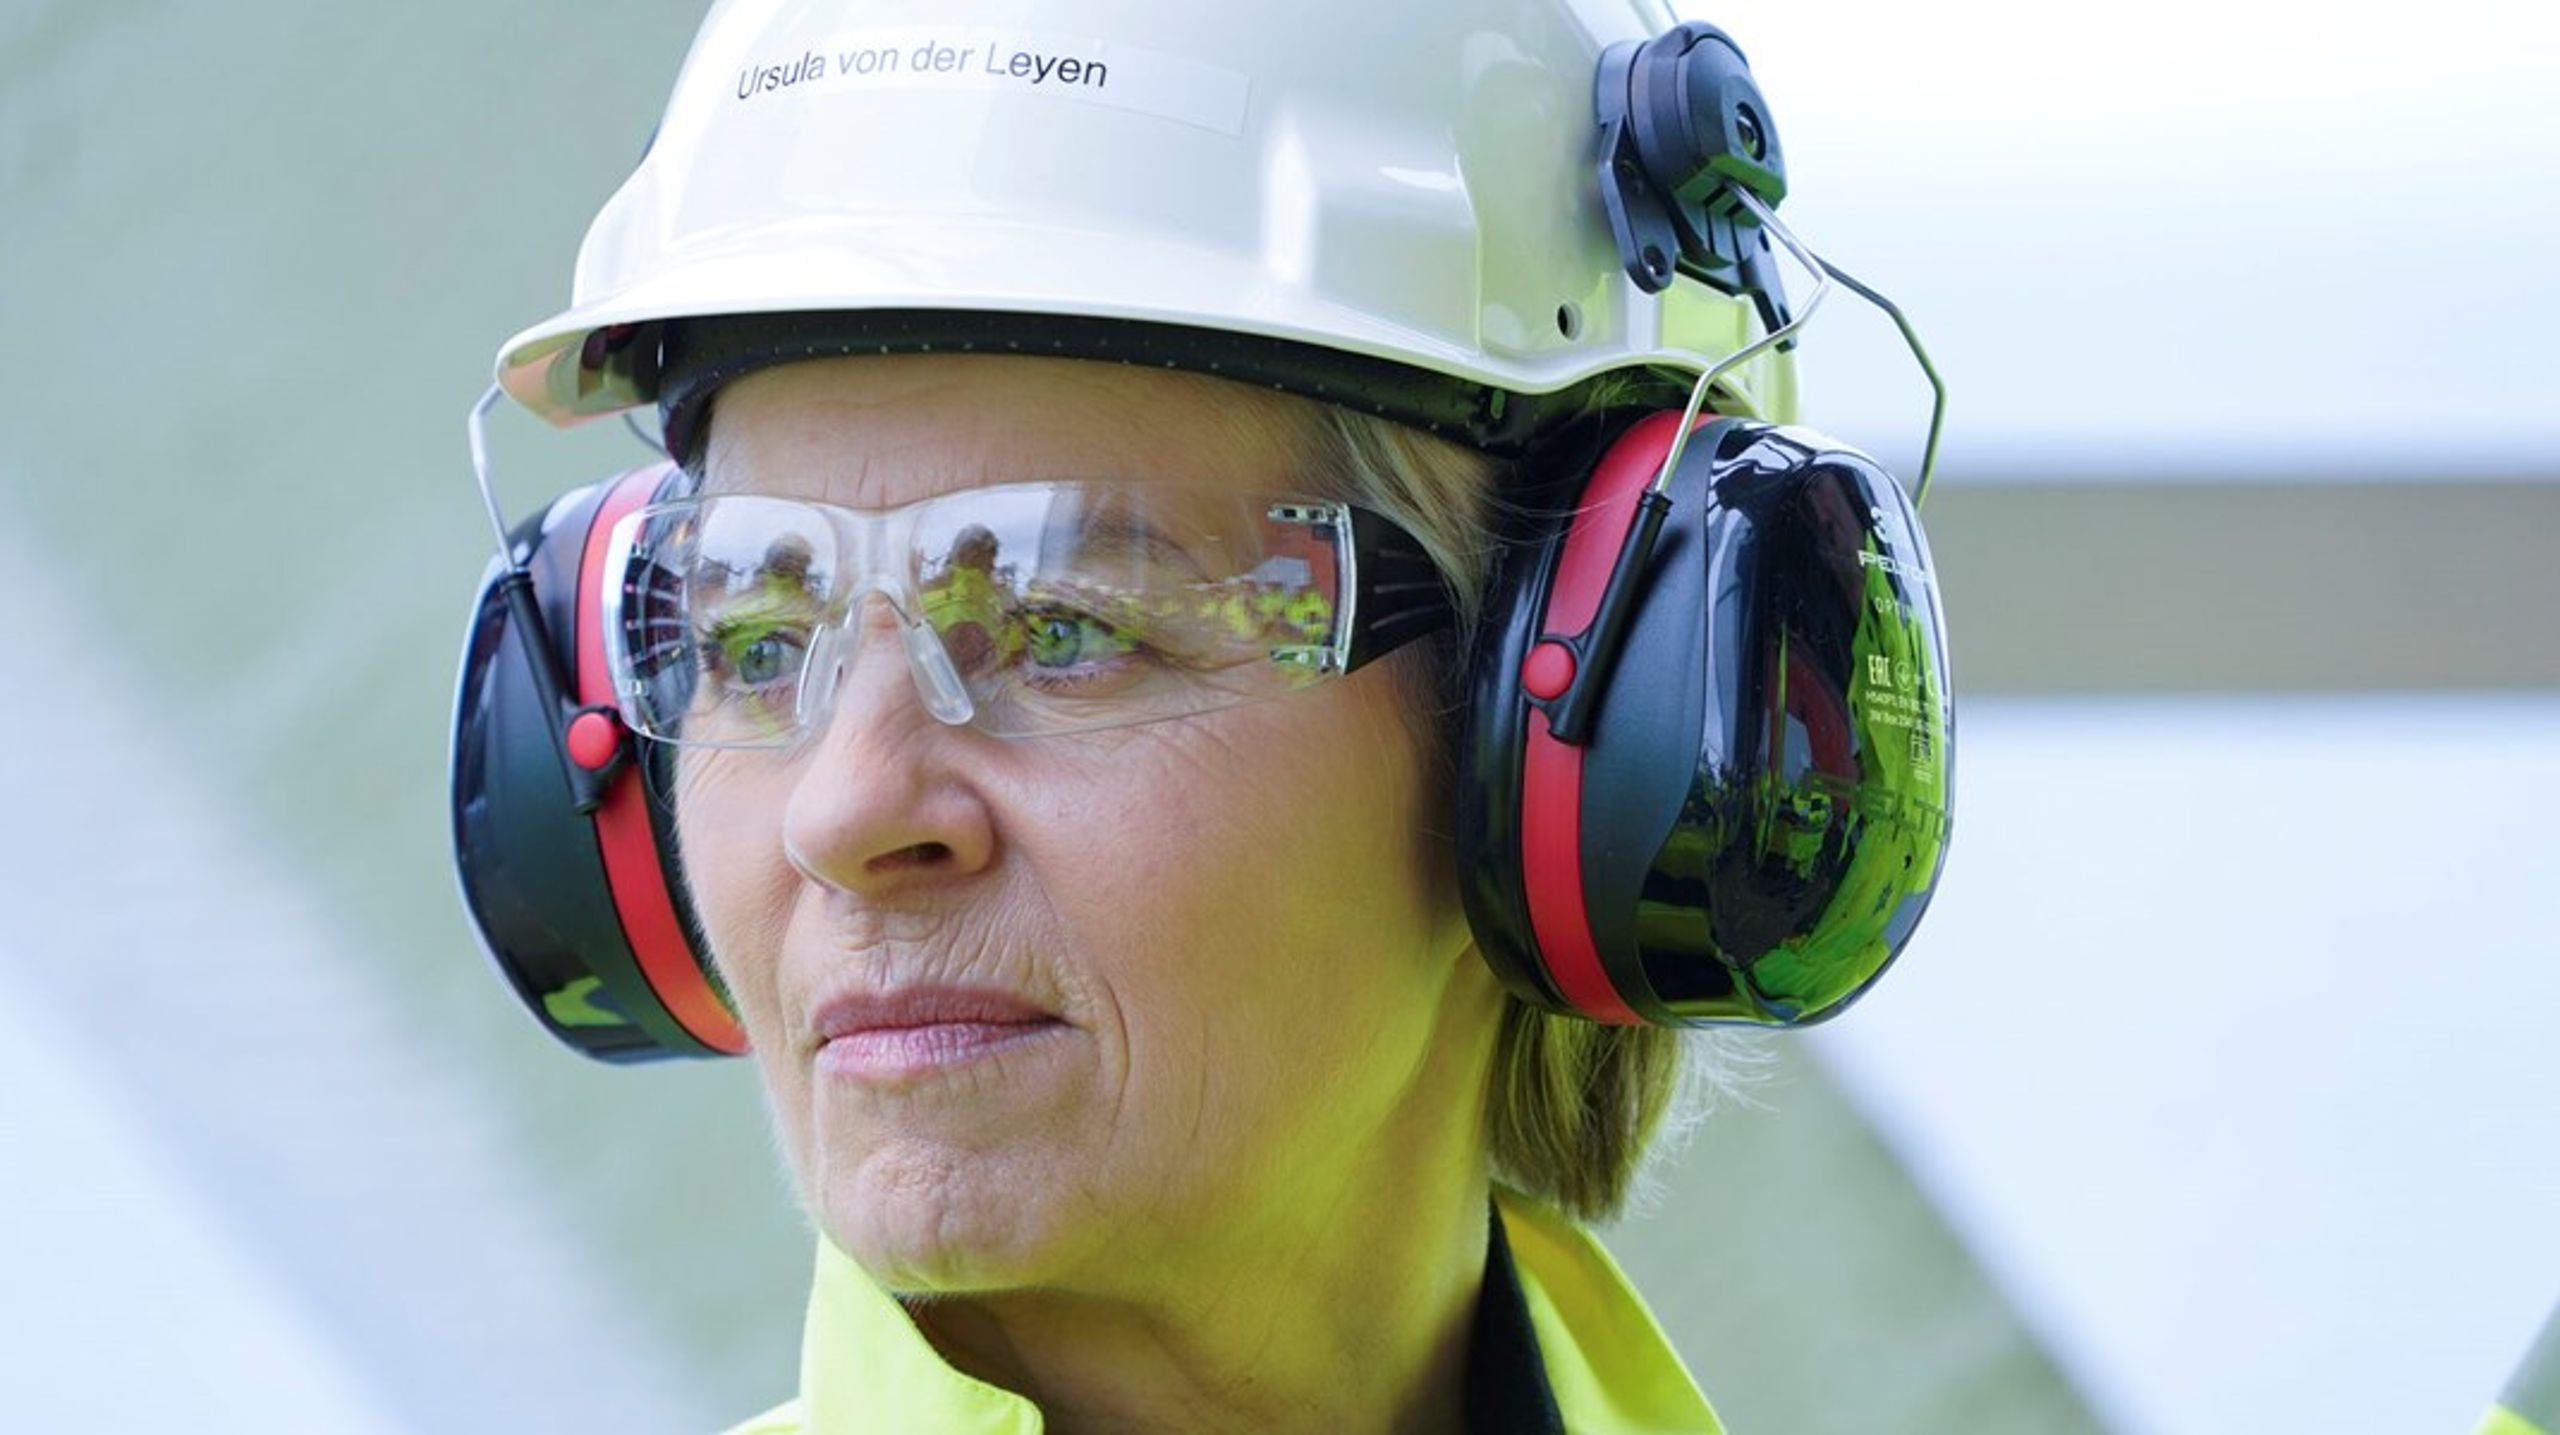 Europa må komme i arbejdstøjet, hvis vi vil undgå at tabe kapløbet om fremtidens industri, siger Ursula von der Leyen. Fredag besøgte EU-Kommissionens formand gasboreplatformen Troll A ud for Norges kyst.